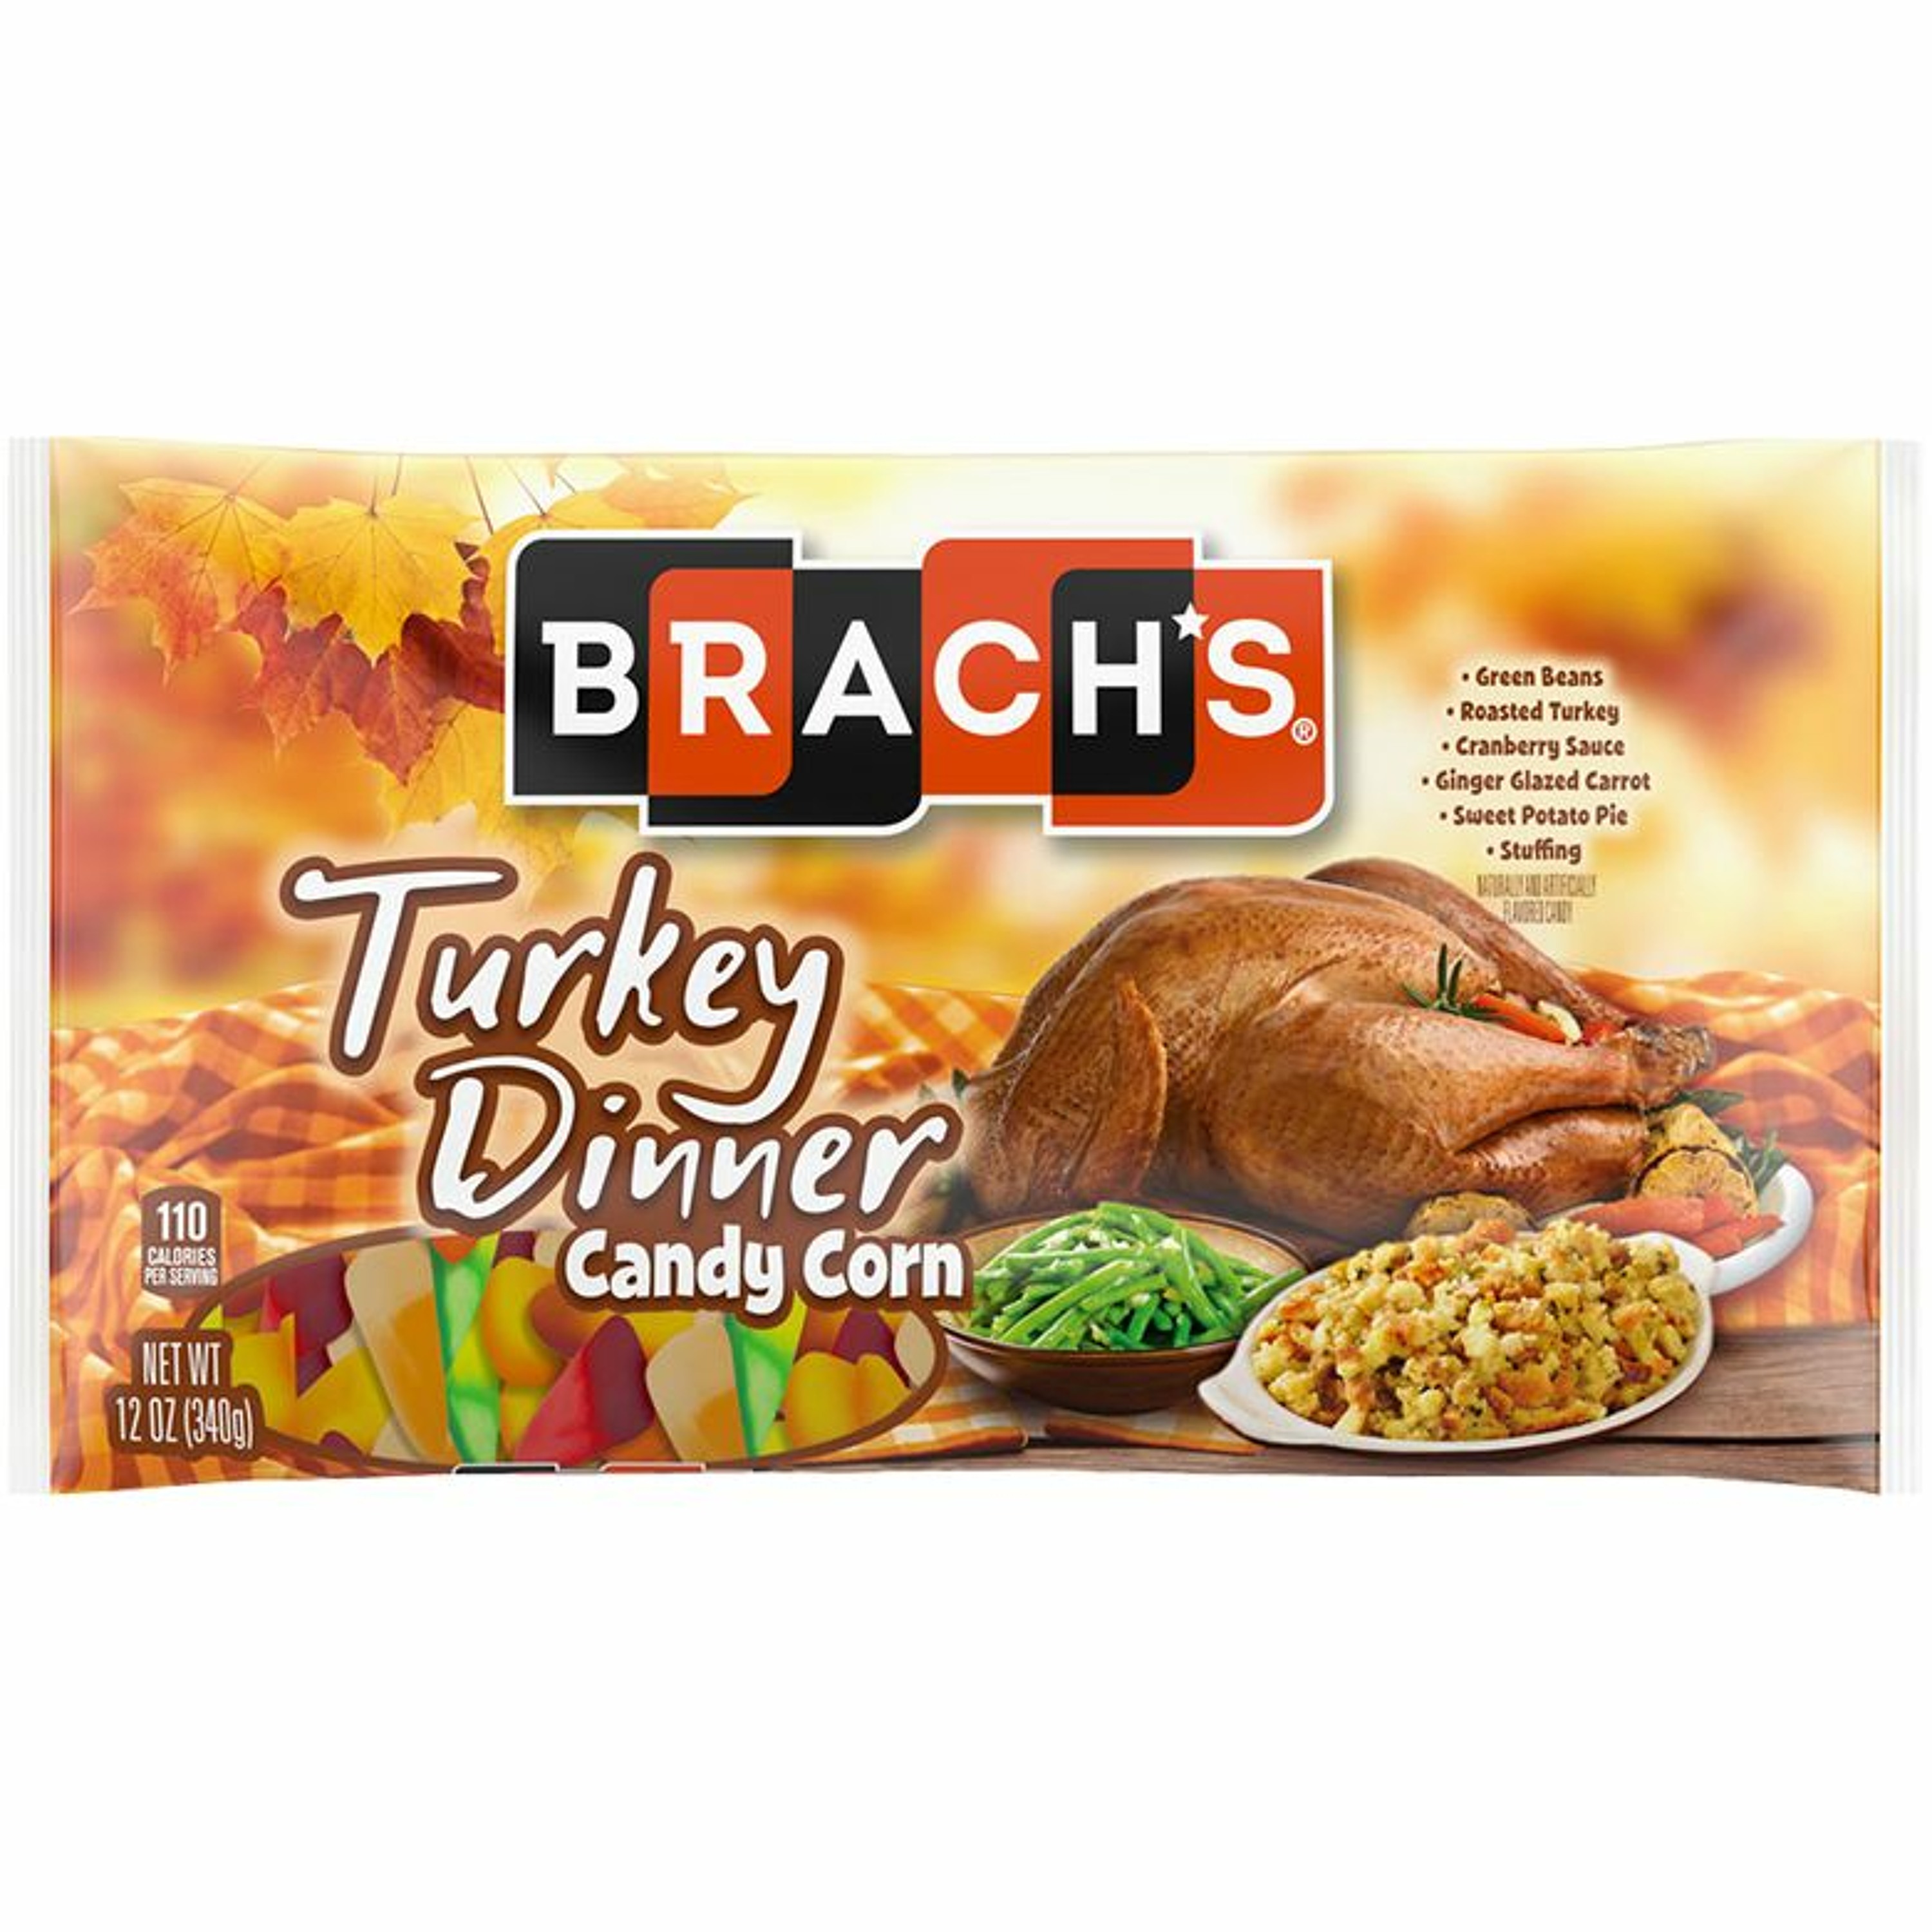 Episode #26 - Brach's Turkey Dinner Candy Corn